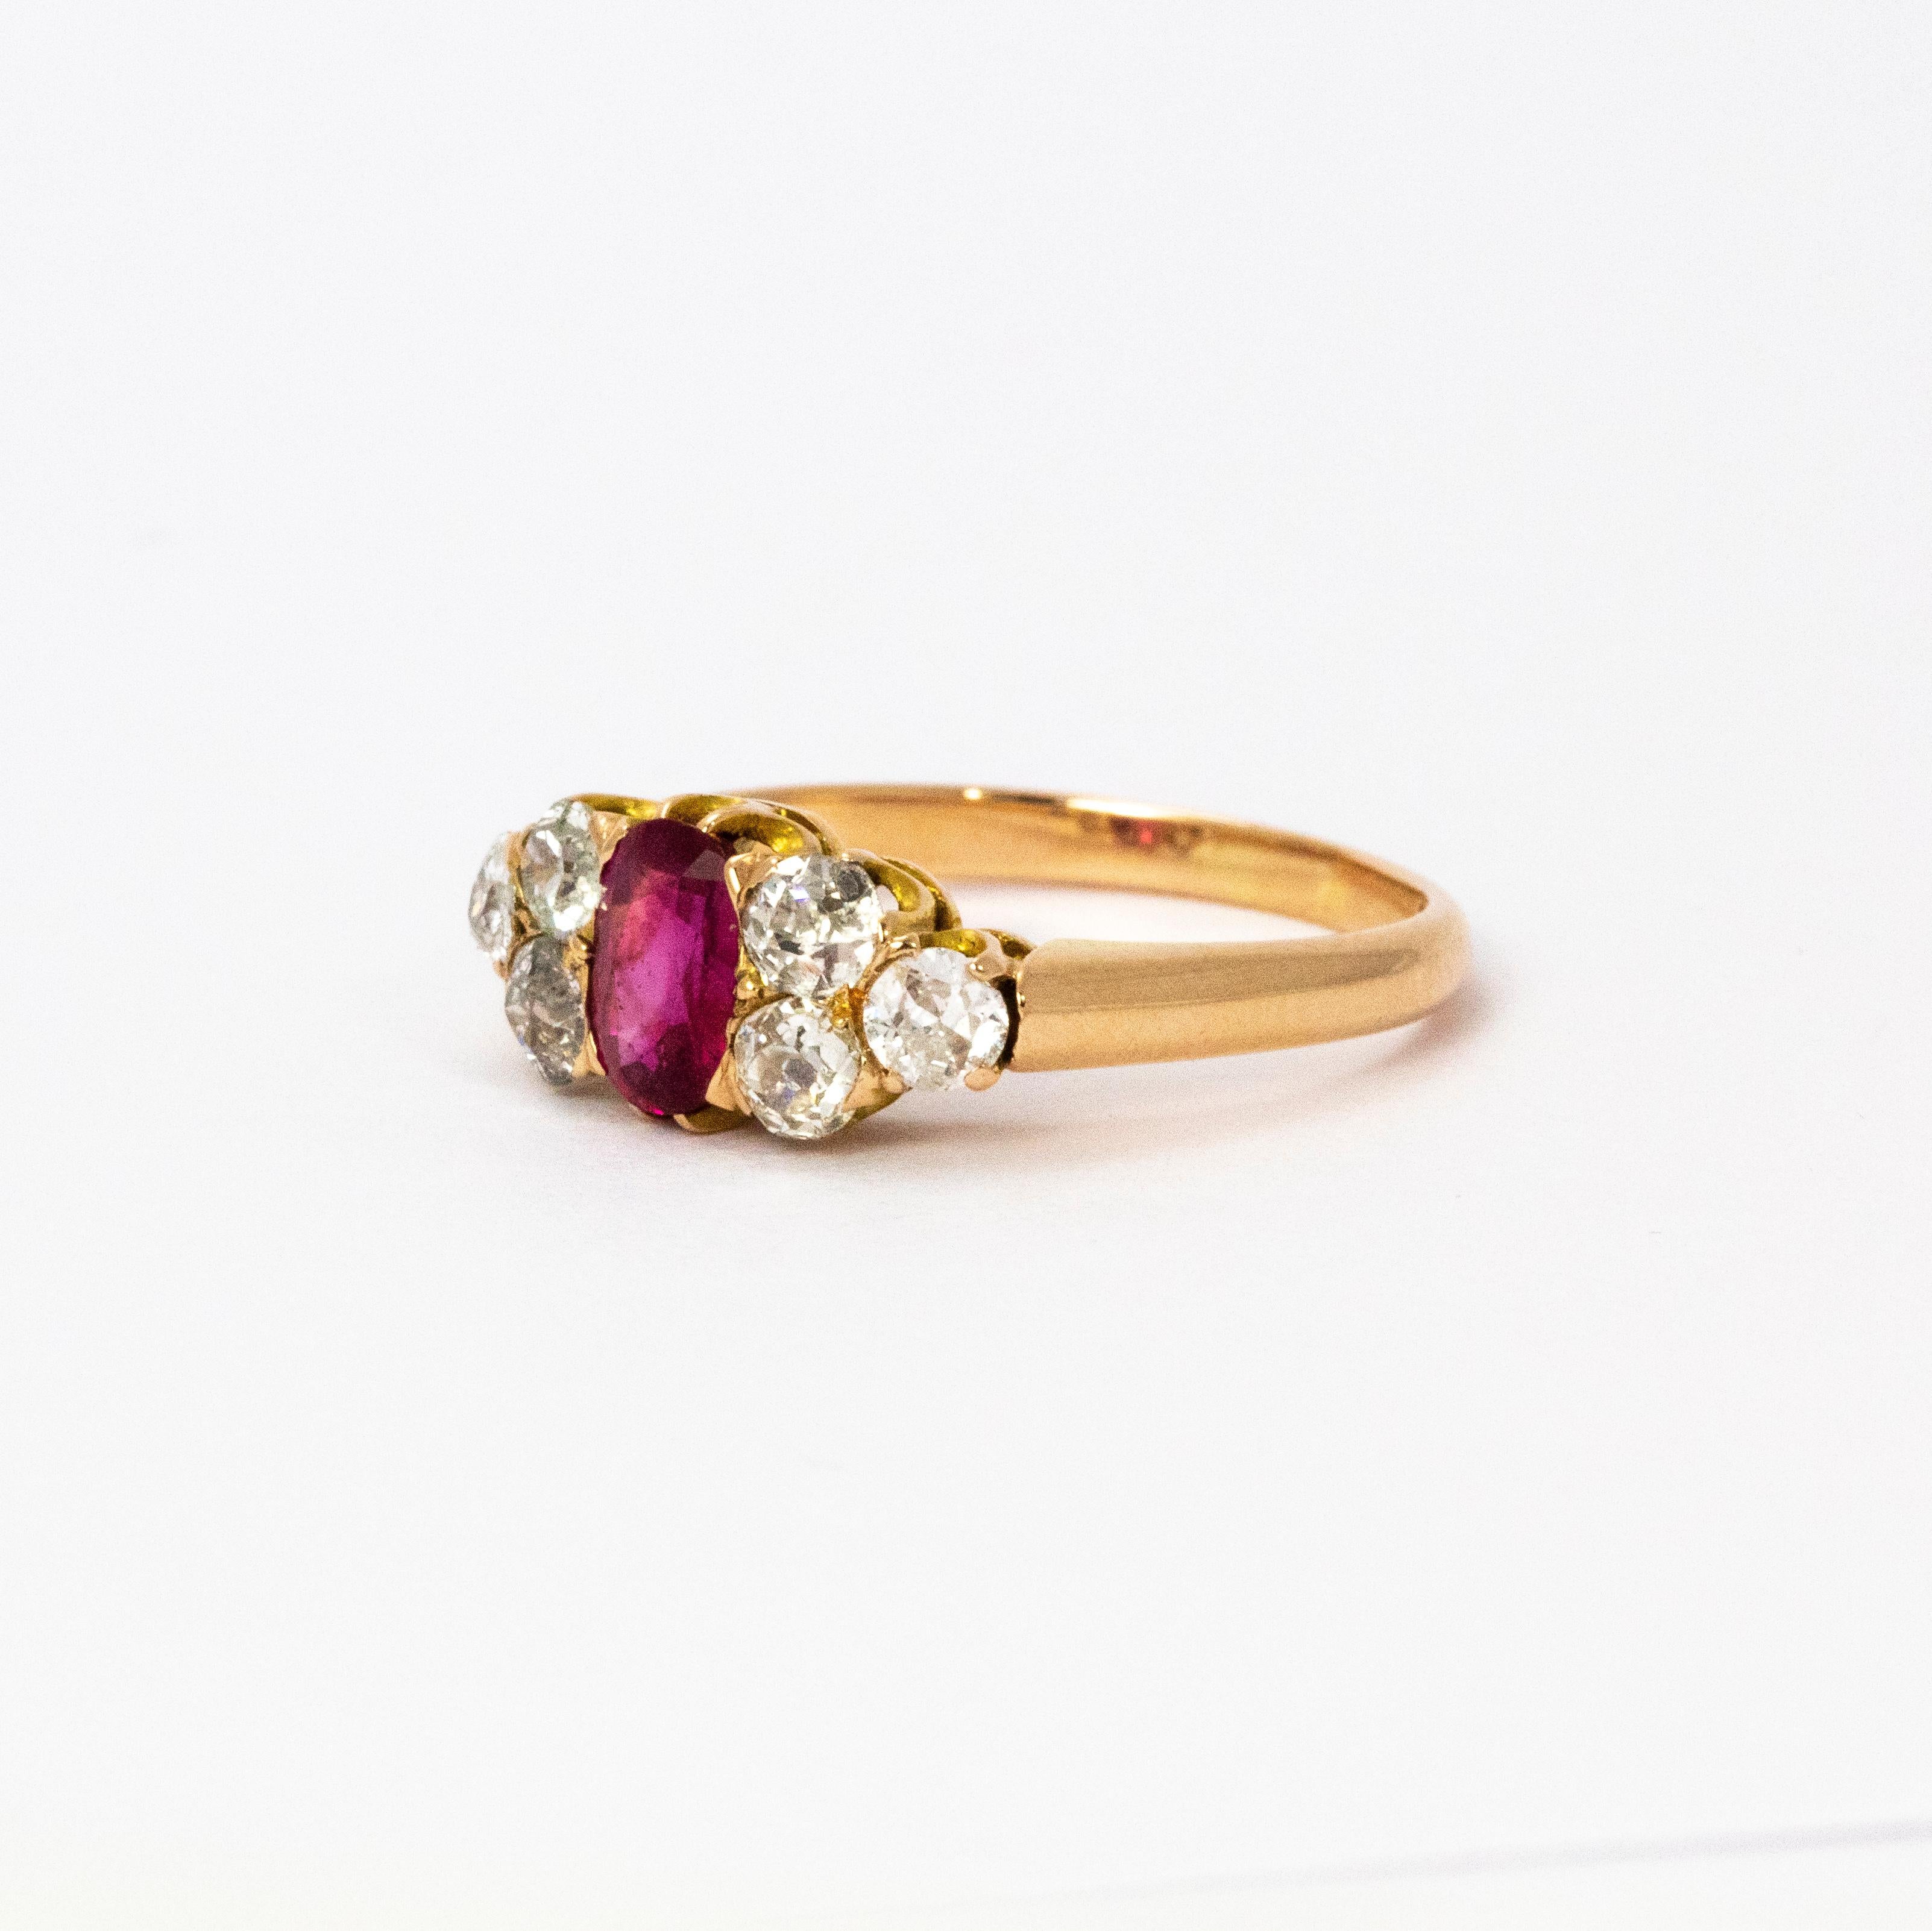 Ein schöner spätviktorianischer Ring, in der Mitte besetzt mit einem atemberaubenden Rubin, der etwa 65 Punkte misst und eine tolle rosa Farbe hat. Auf beiden Seiten sitzt ein Trio von Diamanten im alten europäischen Schliff mit insgesamt 90